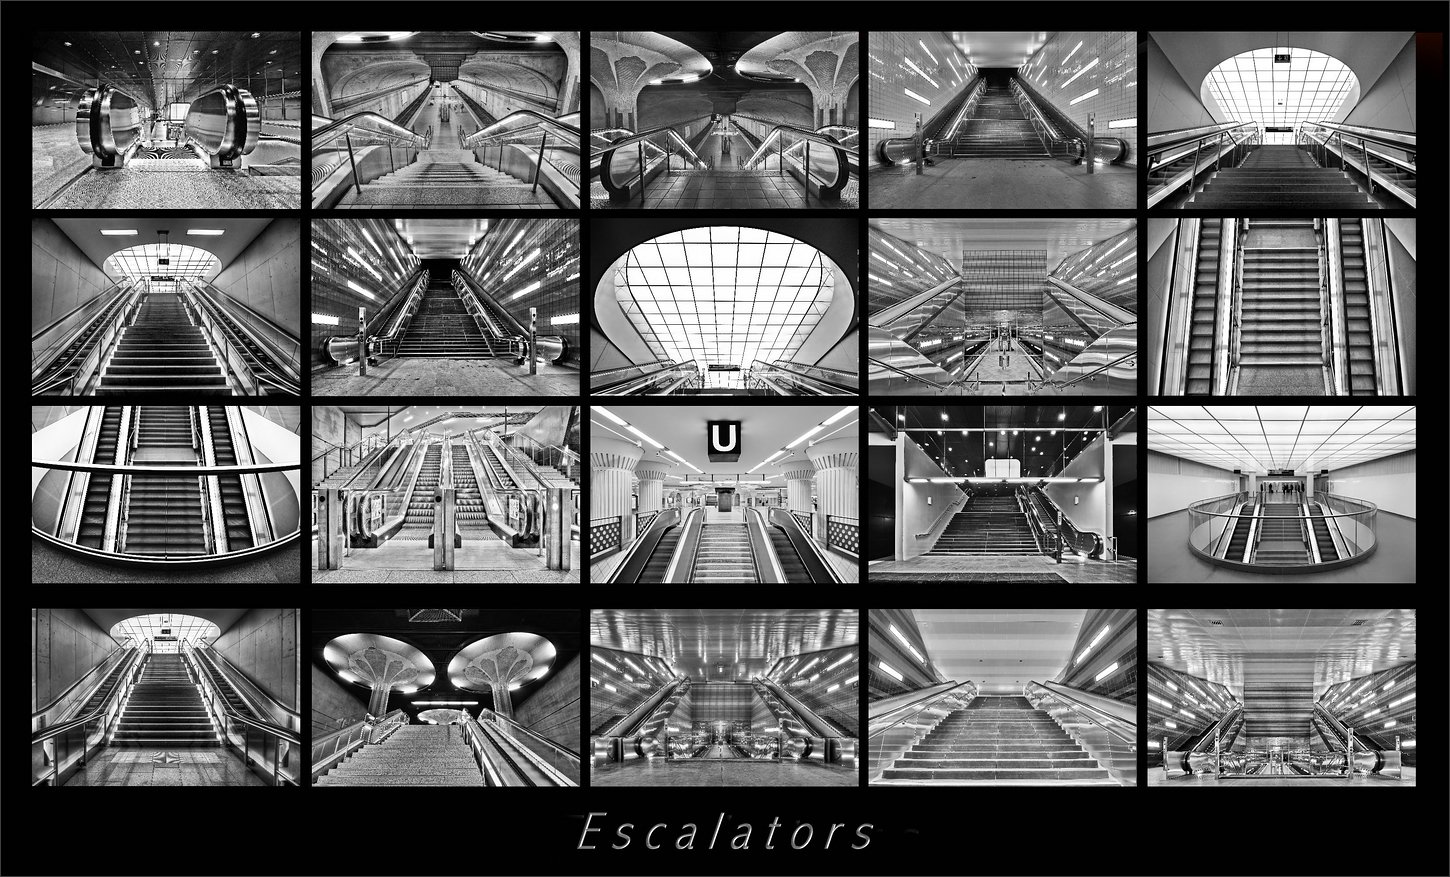  *Escalators *